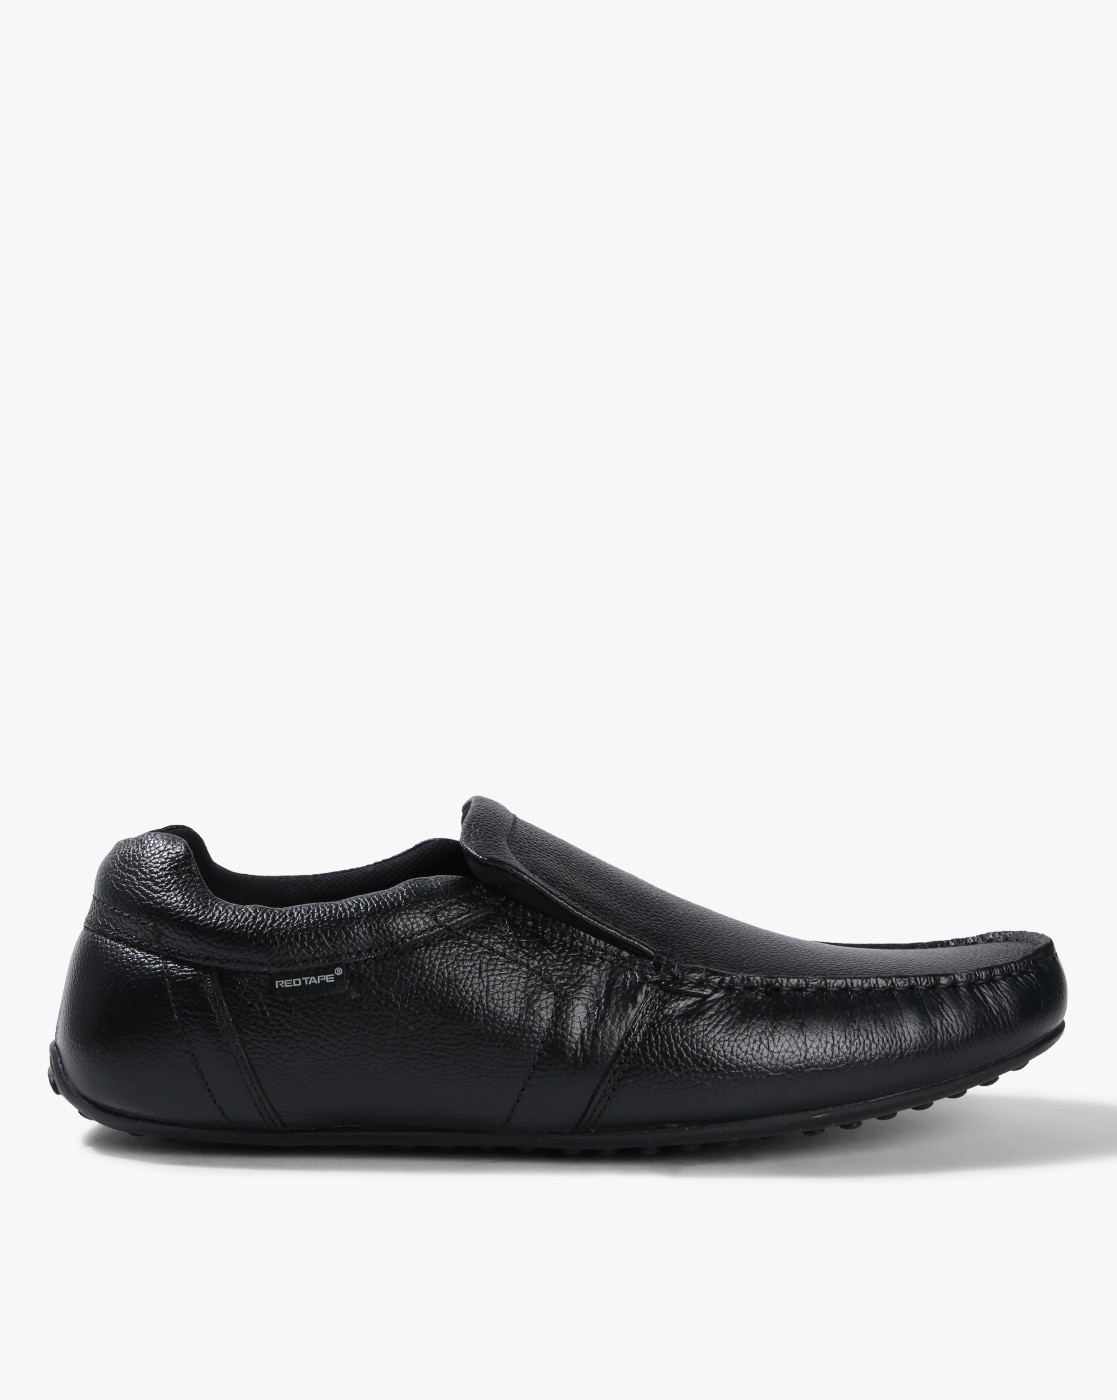 black formal slip on shoes